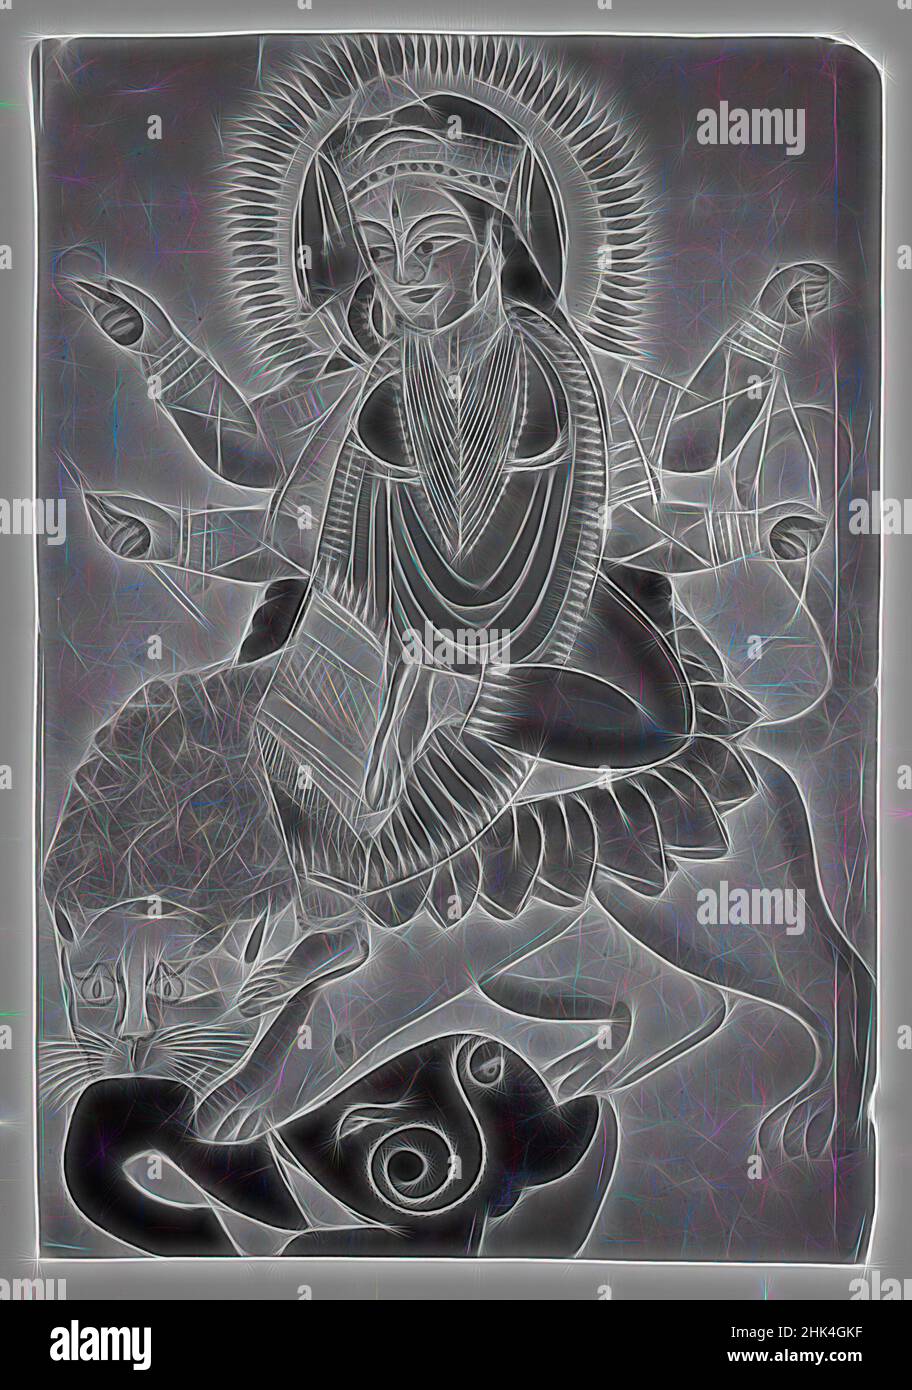 Inspiré par la déesse Durga Astaride a Lion, aquarelles sur papier avec des accents d'étain poli, Kolkata, Calcutta, Bengale occidental, Inde, Fin 19th-début 20th siècle, 16 x 11 po., 40,6 x 27,9 cm, réimaginé par Artotop. L'art classique réinventé avec une touche moderne. Conception de lumière chaleureuse et gaie, de luminosité et de rayonnement de lumière. La photographie s'inspire du surréalisme et du futurisme, embrassant l'énergie dynamique de la technologie moderne, du mouvement, de la vitesse et révolutionne la culture Banque D'Images